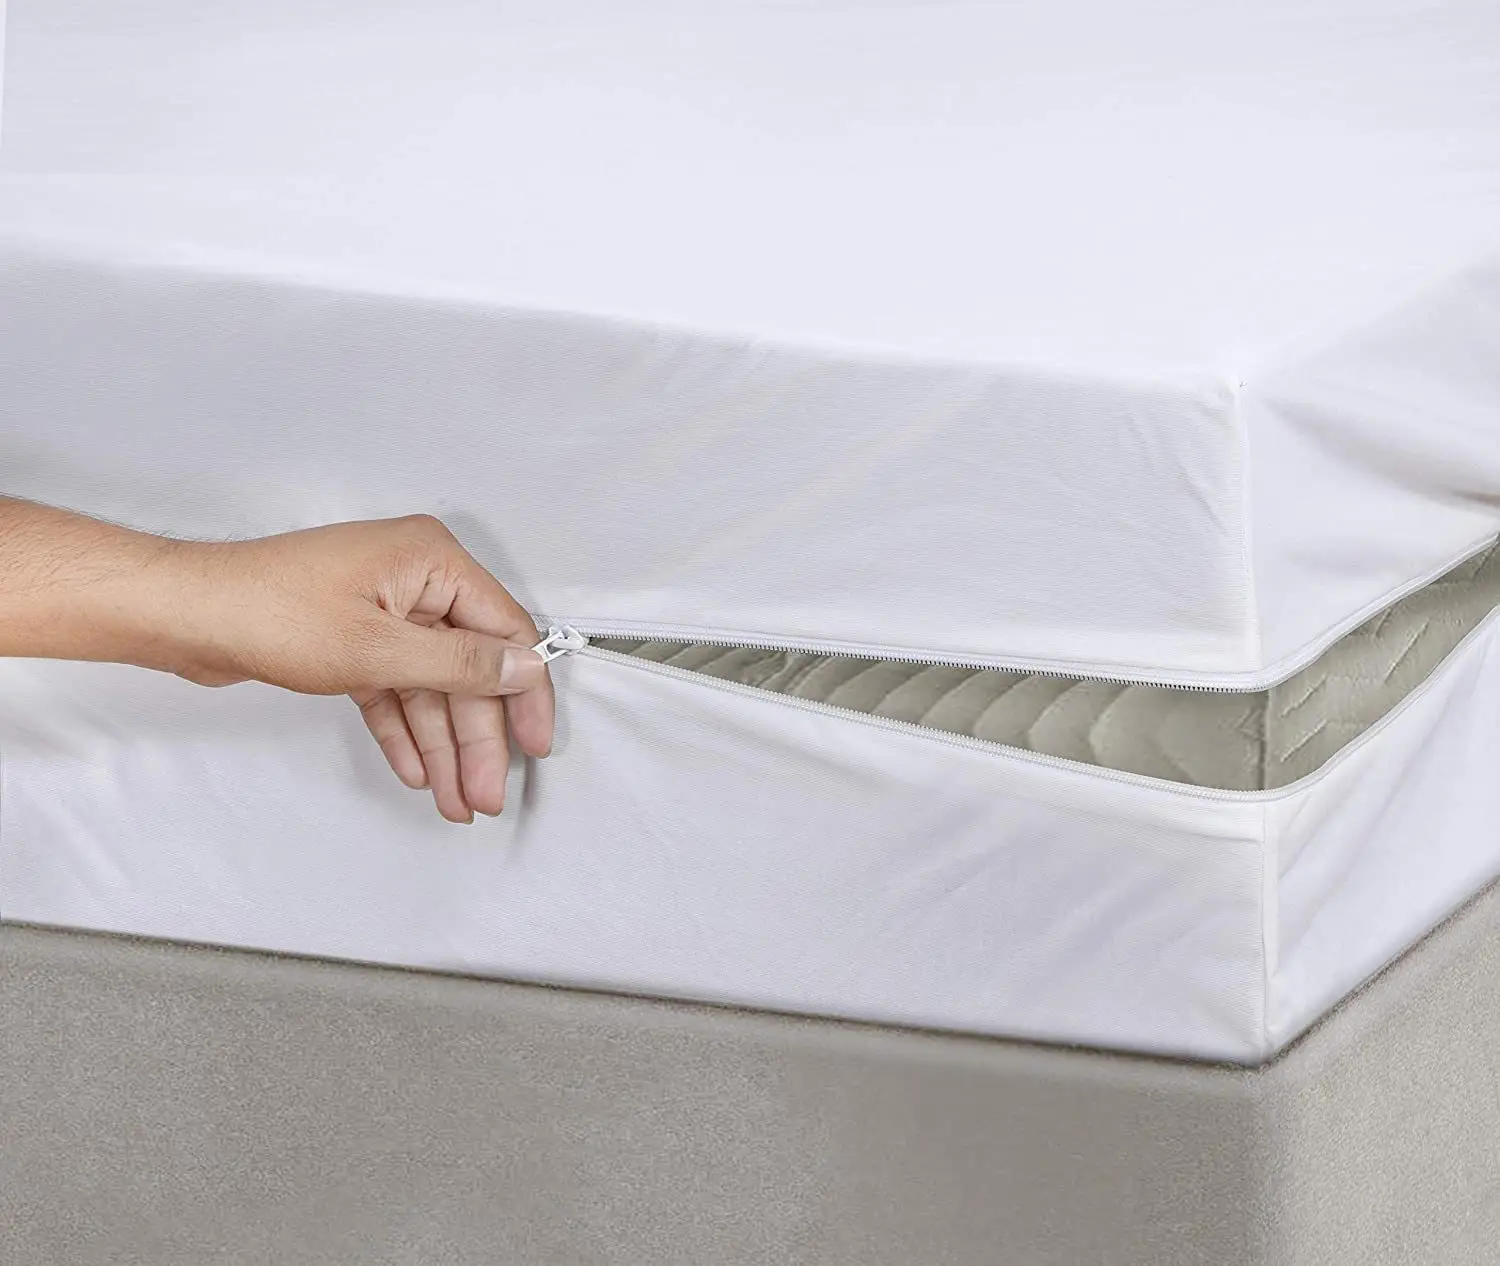 Couvre-lit en microfibre blanc minimaliste Quilting 100% housse de protection imperméable pour lit double king size